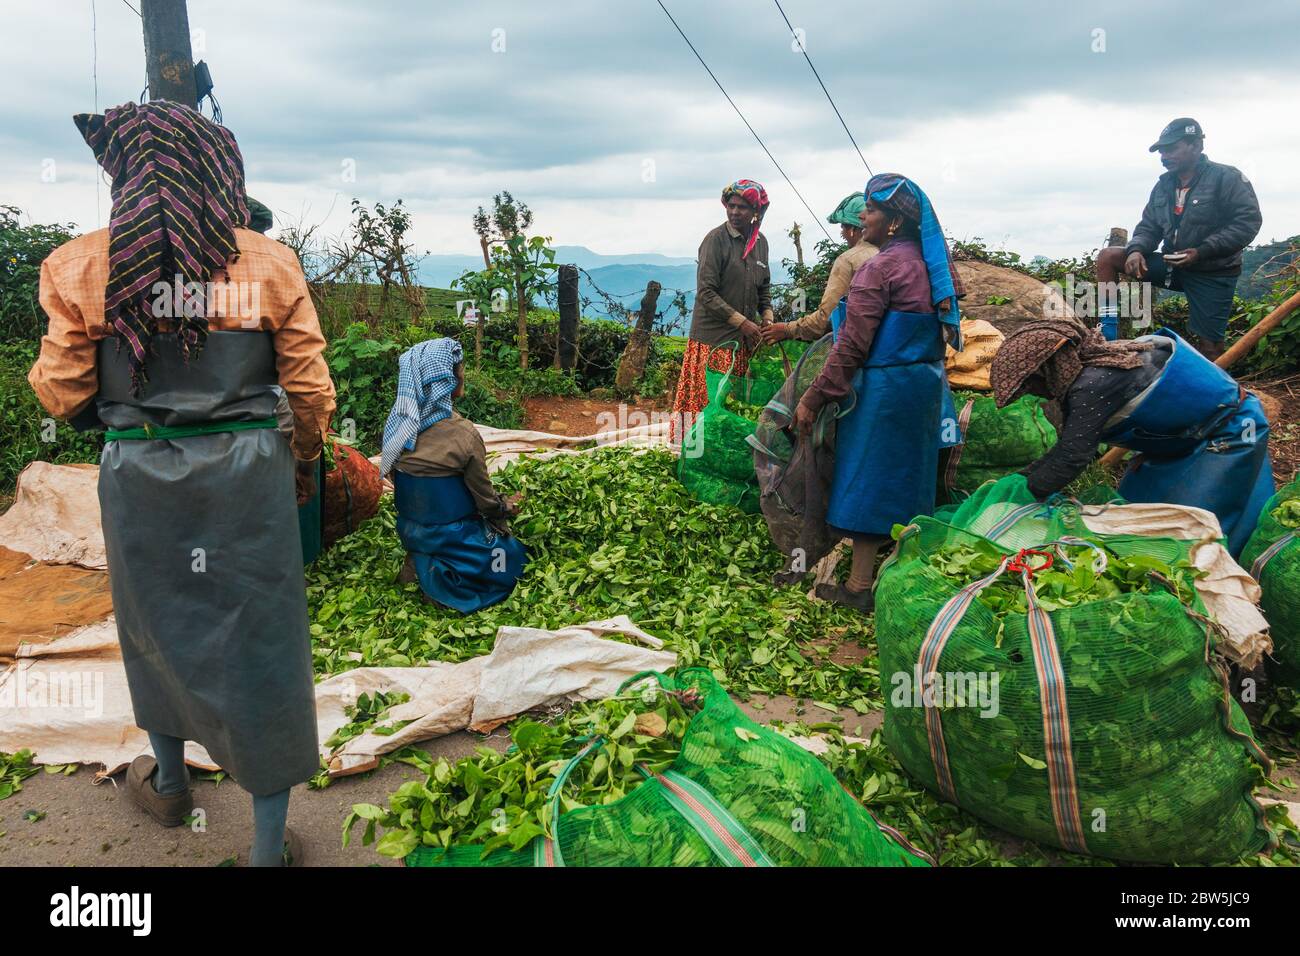 Weibliche Tee-Picker entladen und wiegen Beutel mit Teeblättern, die tagsüber in Munnar, Indien, geerntet werden Stockfoto